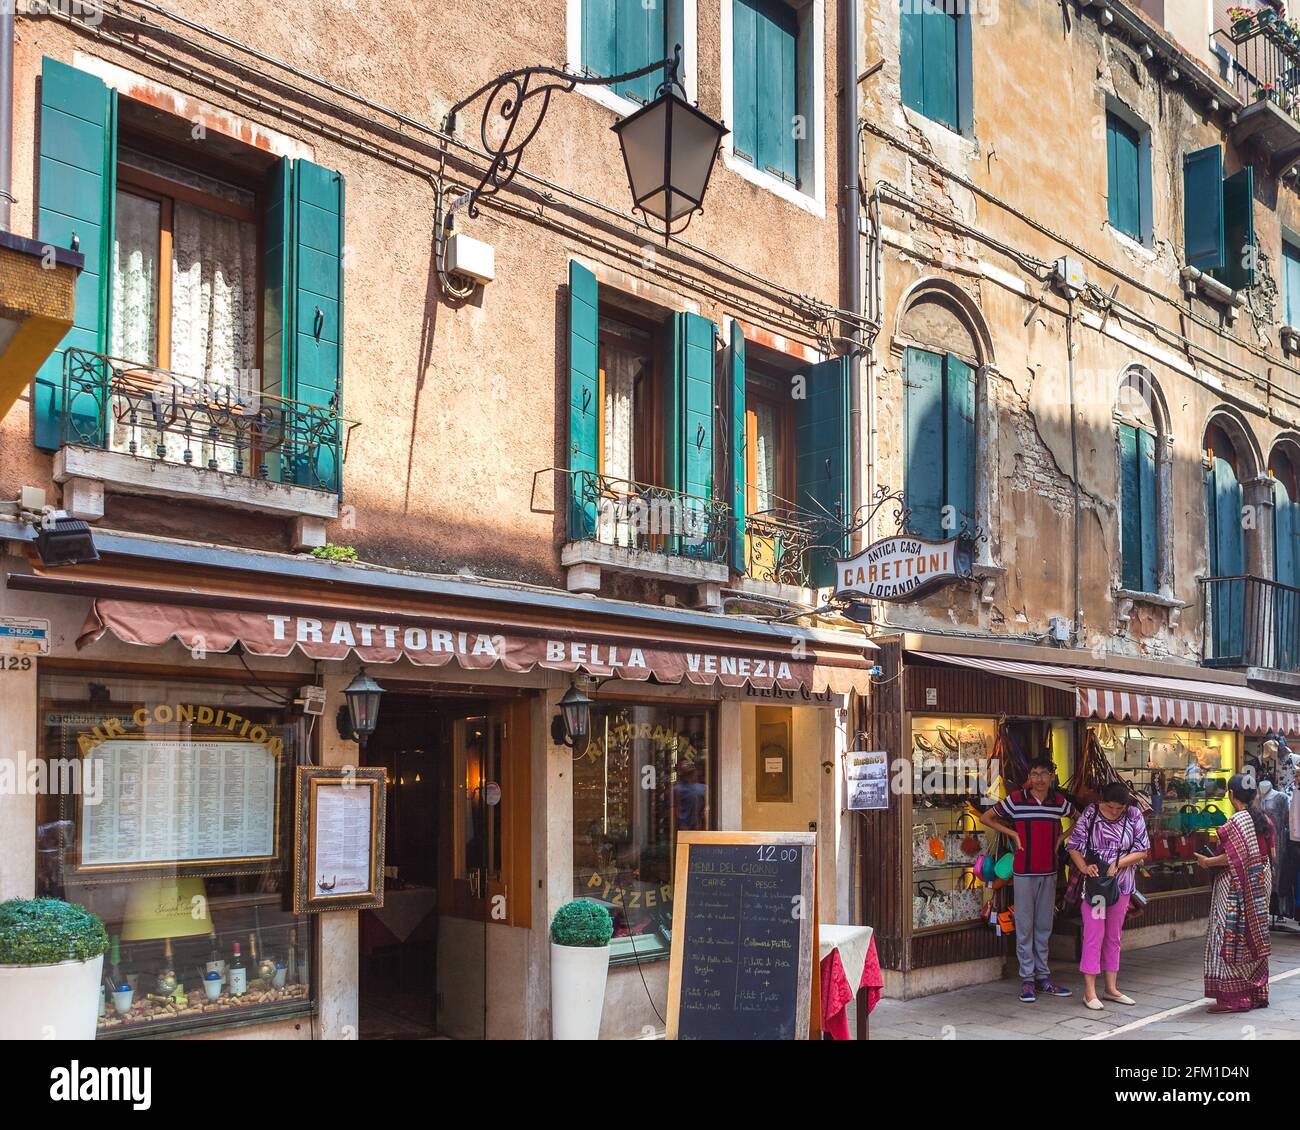 VENICE, ITALY - JUNE 15, 2016 View to little cafe Trattoria bella Venezia based on Rio Terra Lista di Spagna street Stock Photo